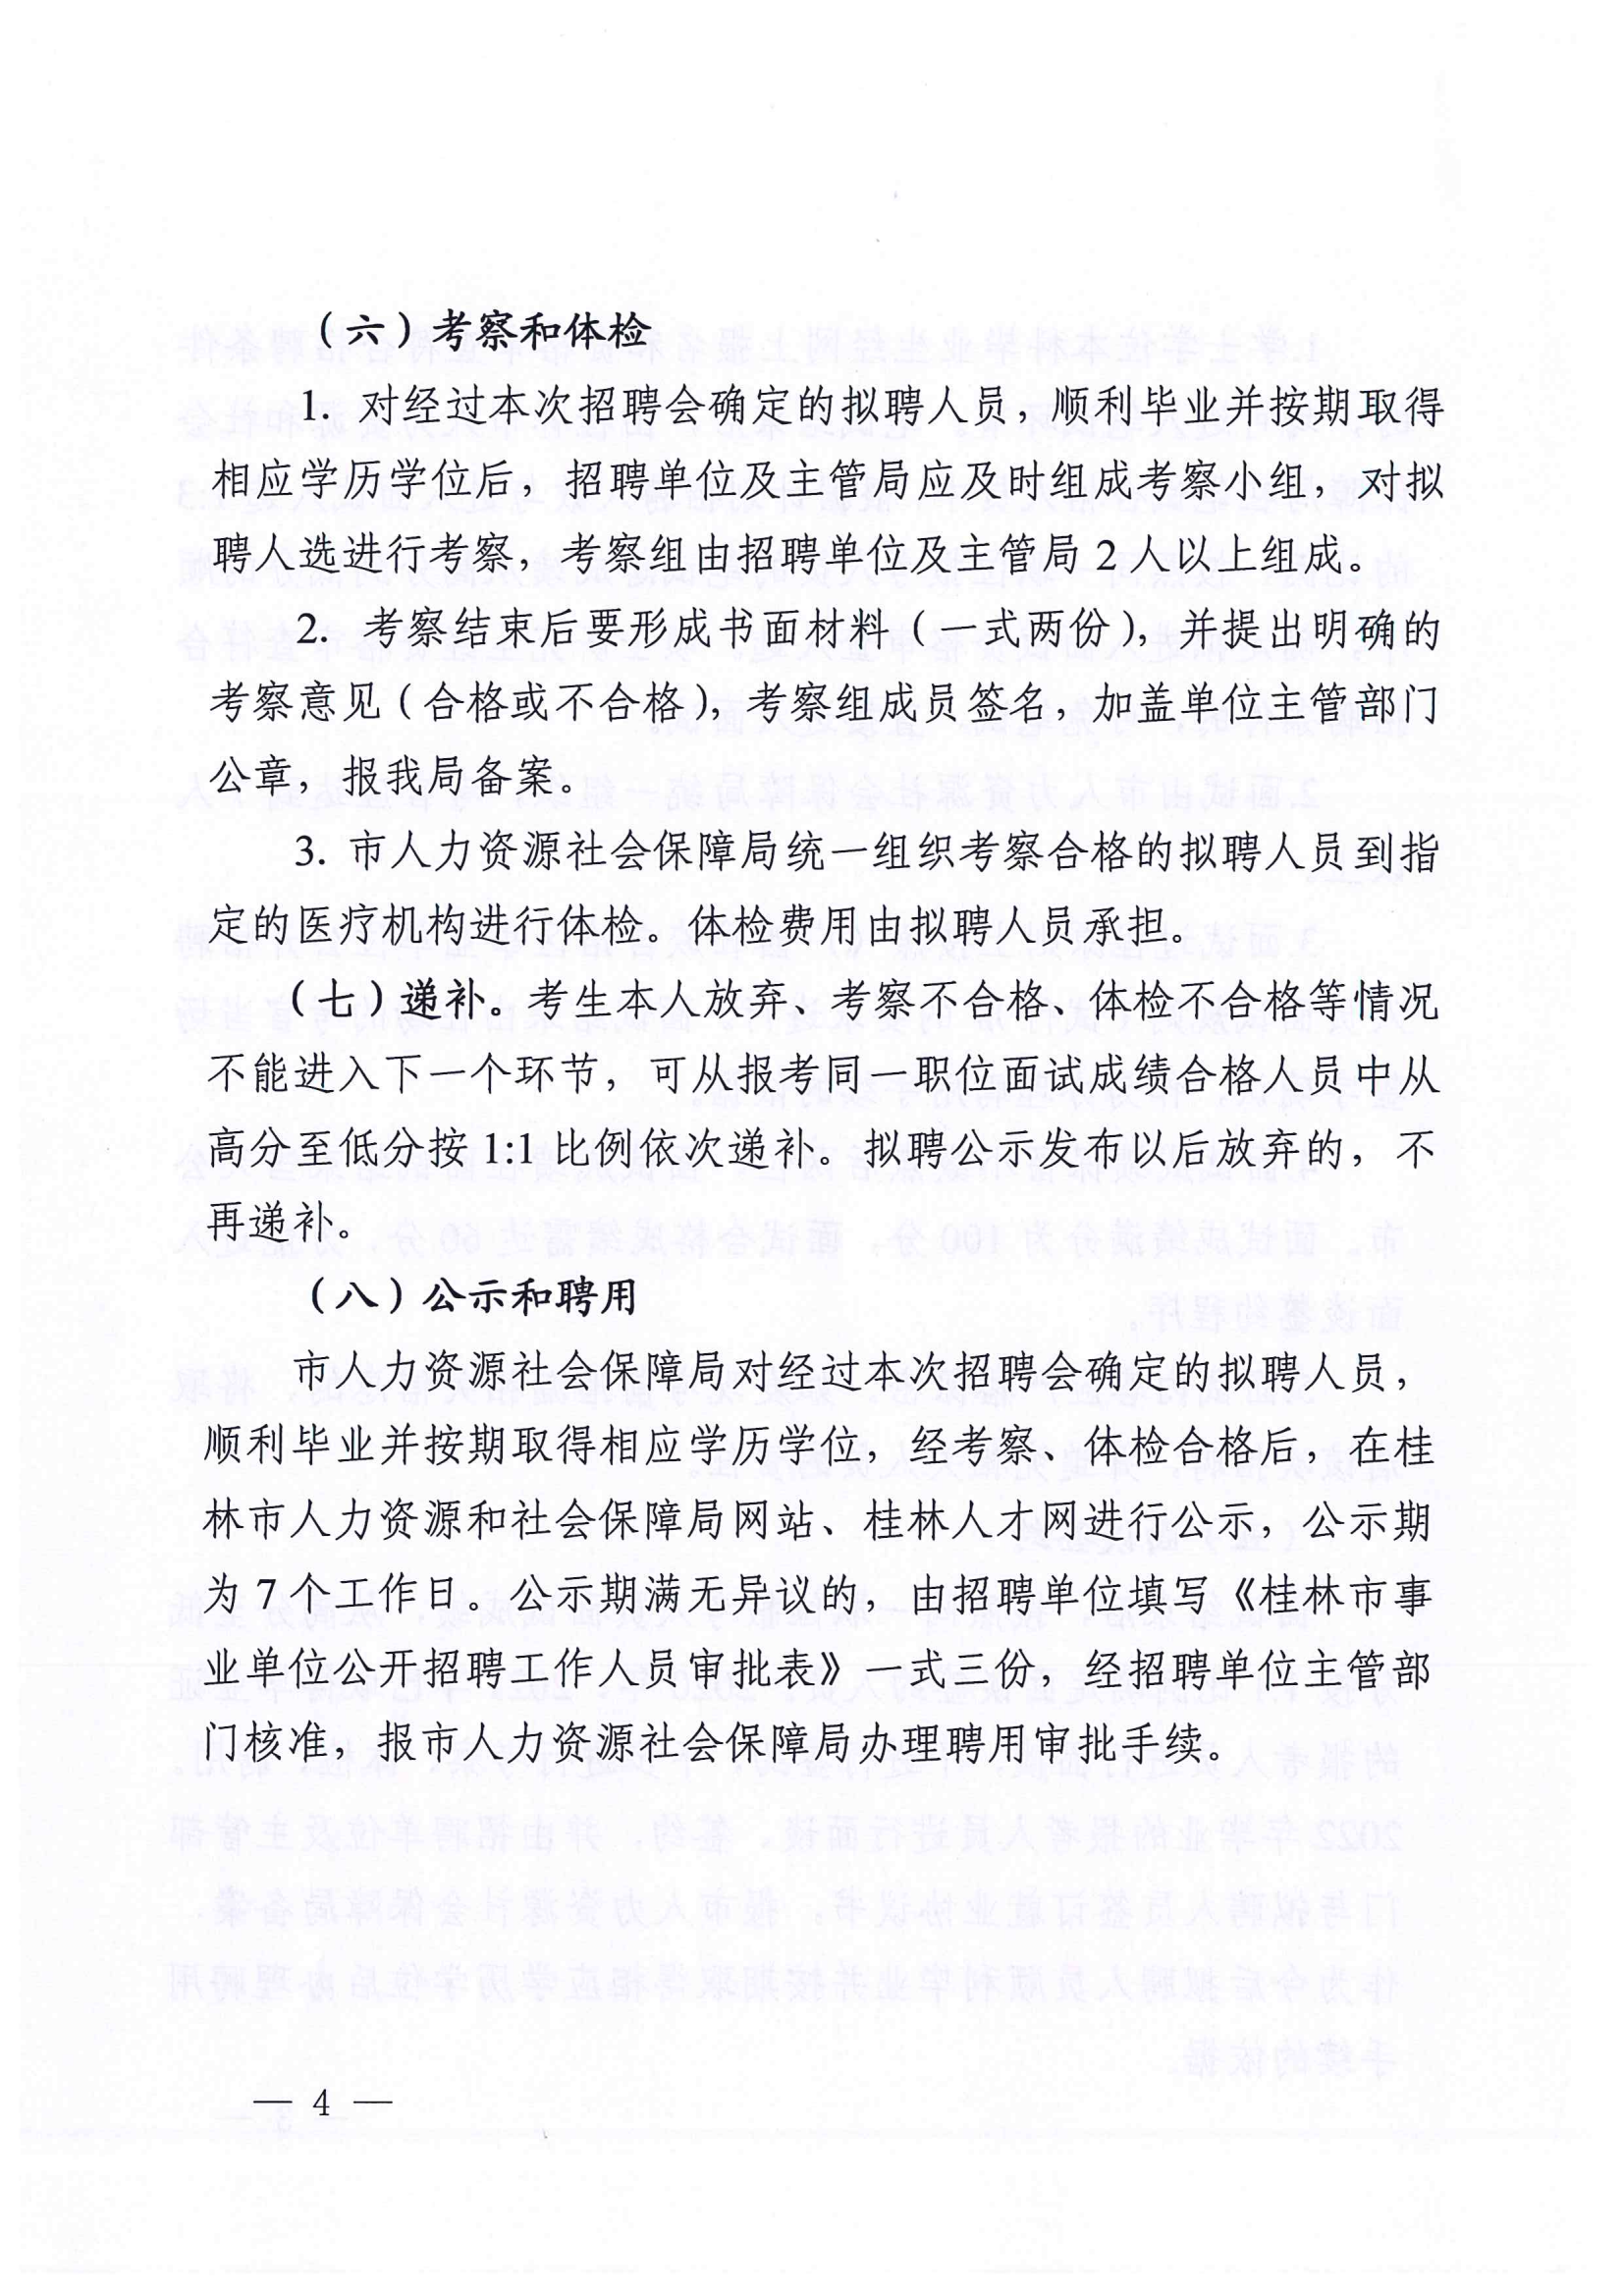 （以此为准）桂林市人力资源和社会保障局关于申报2021年面向全国高校招聘急需紧缺专业人才信息的通知_05.png